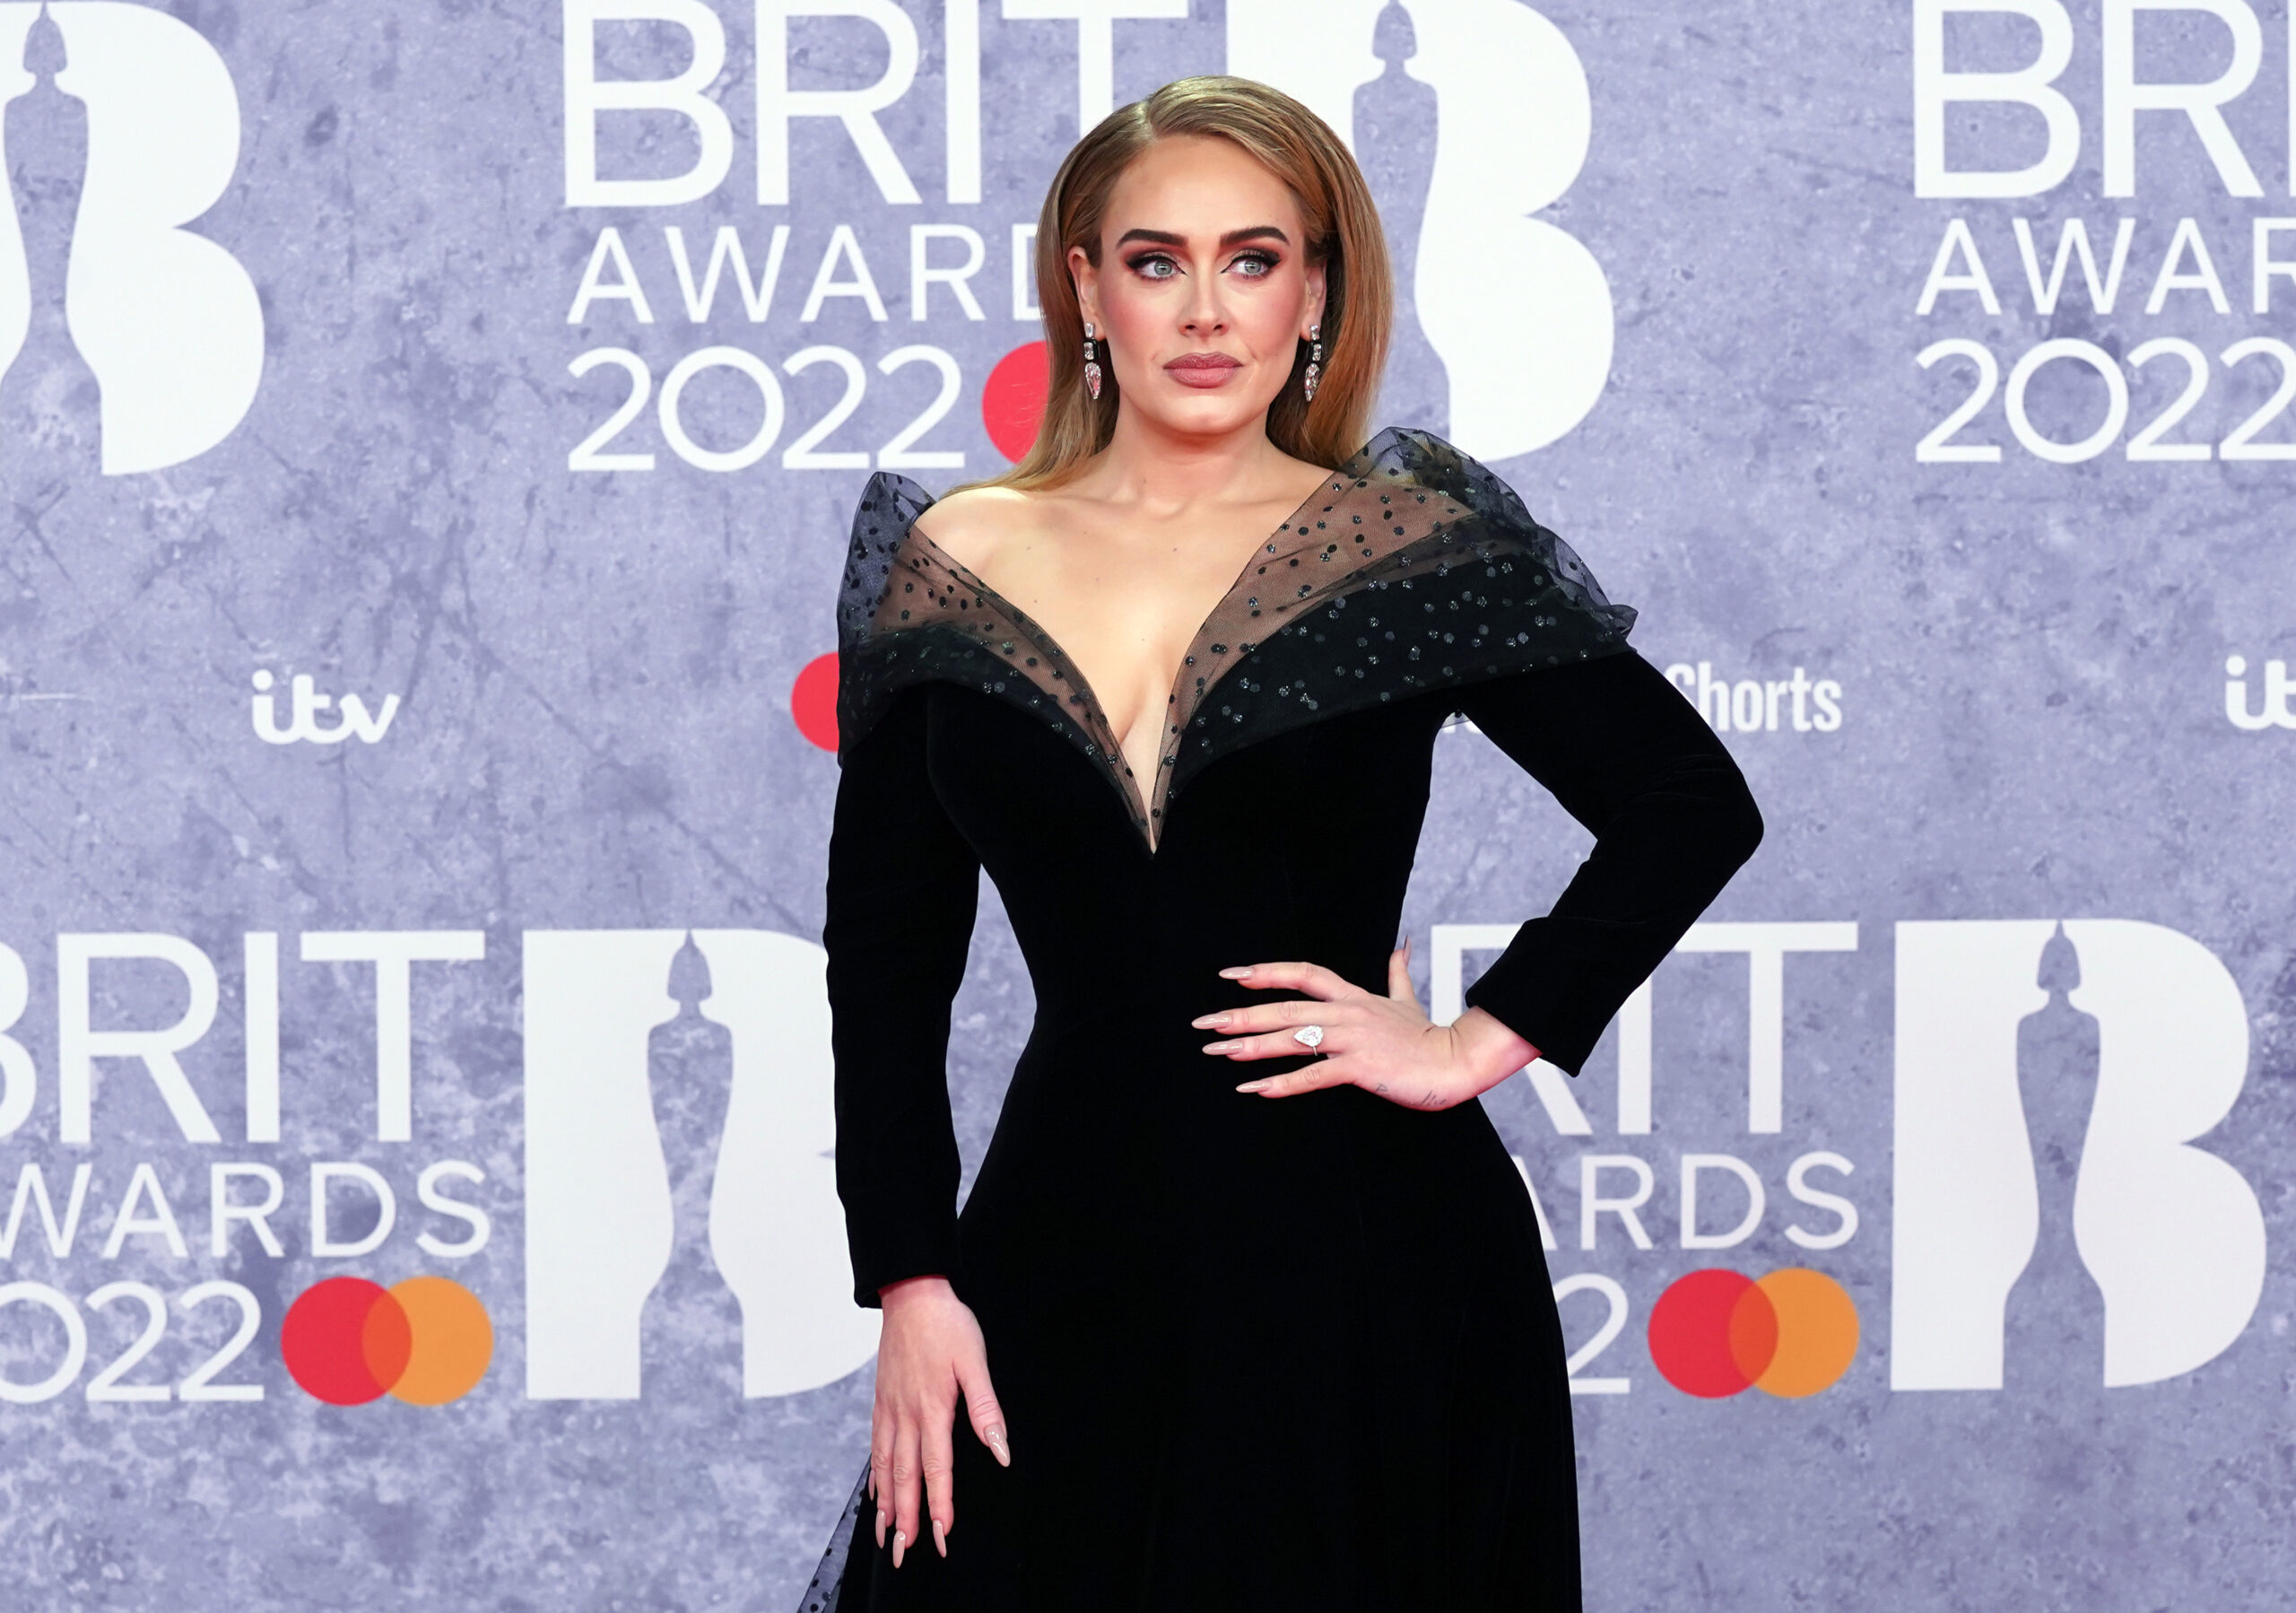 Oscar-díjas, elvált, összetört szívű rekorder, aki 10 perc alatt írta meg első slágerét – Adele 35 éves lett